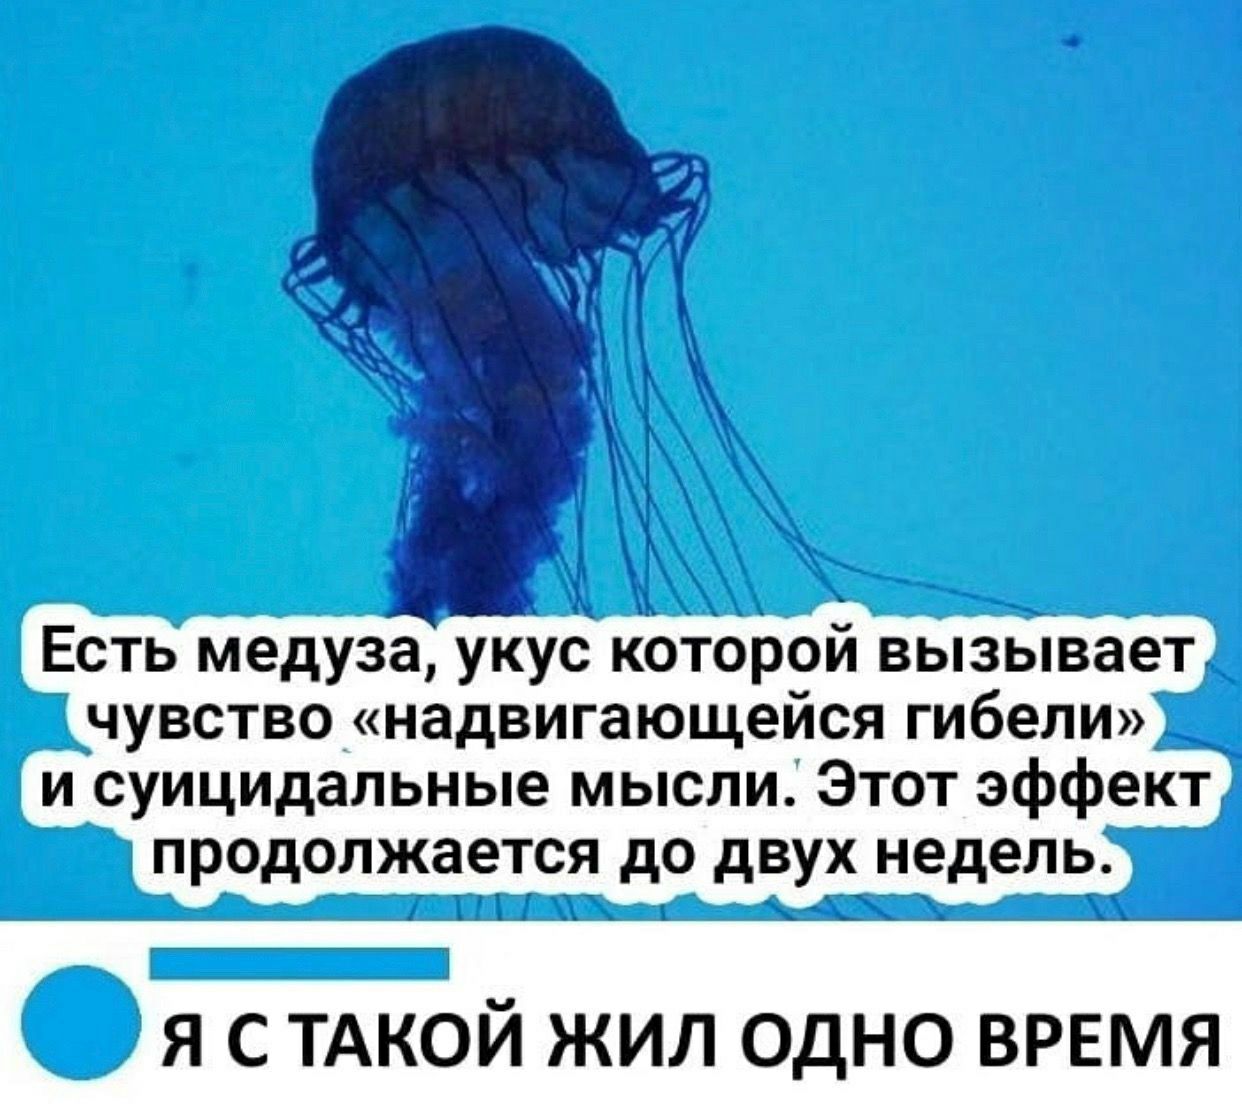 У медузы есть мозги. Медуза которая вызывает чувство надвигающейся гибели. Медуза суицидальные мысли. Медуза Мем. Укус медузы вызывает чувство надвигающейся гибели.